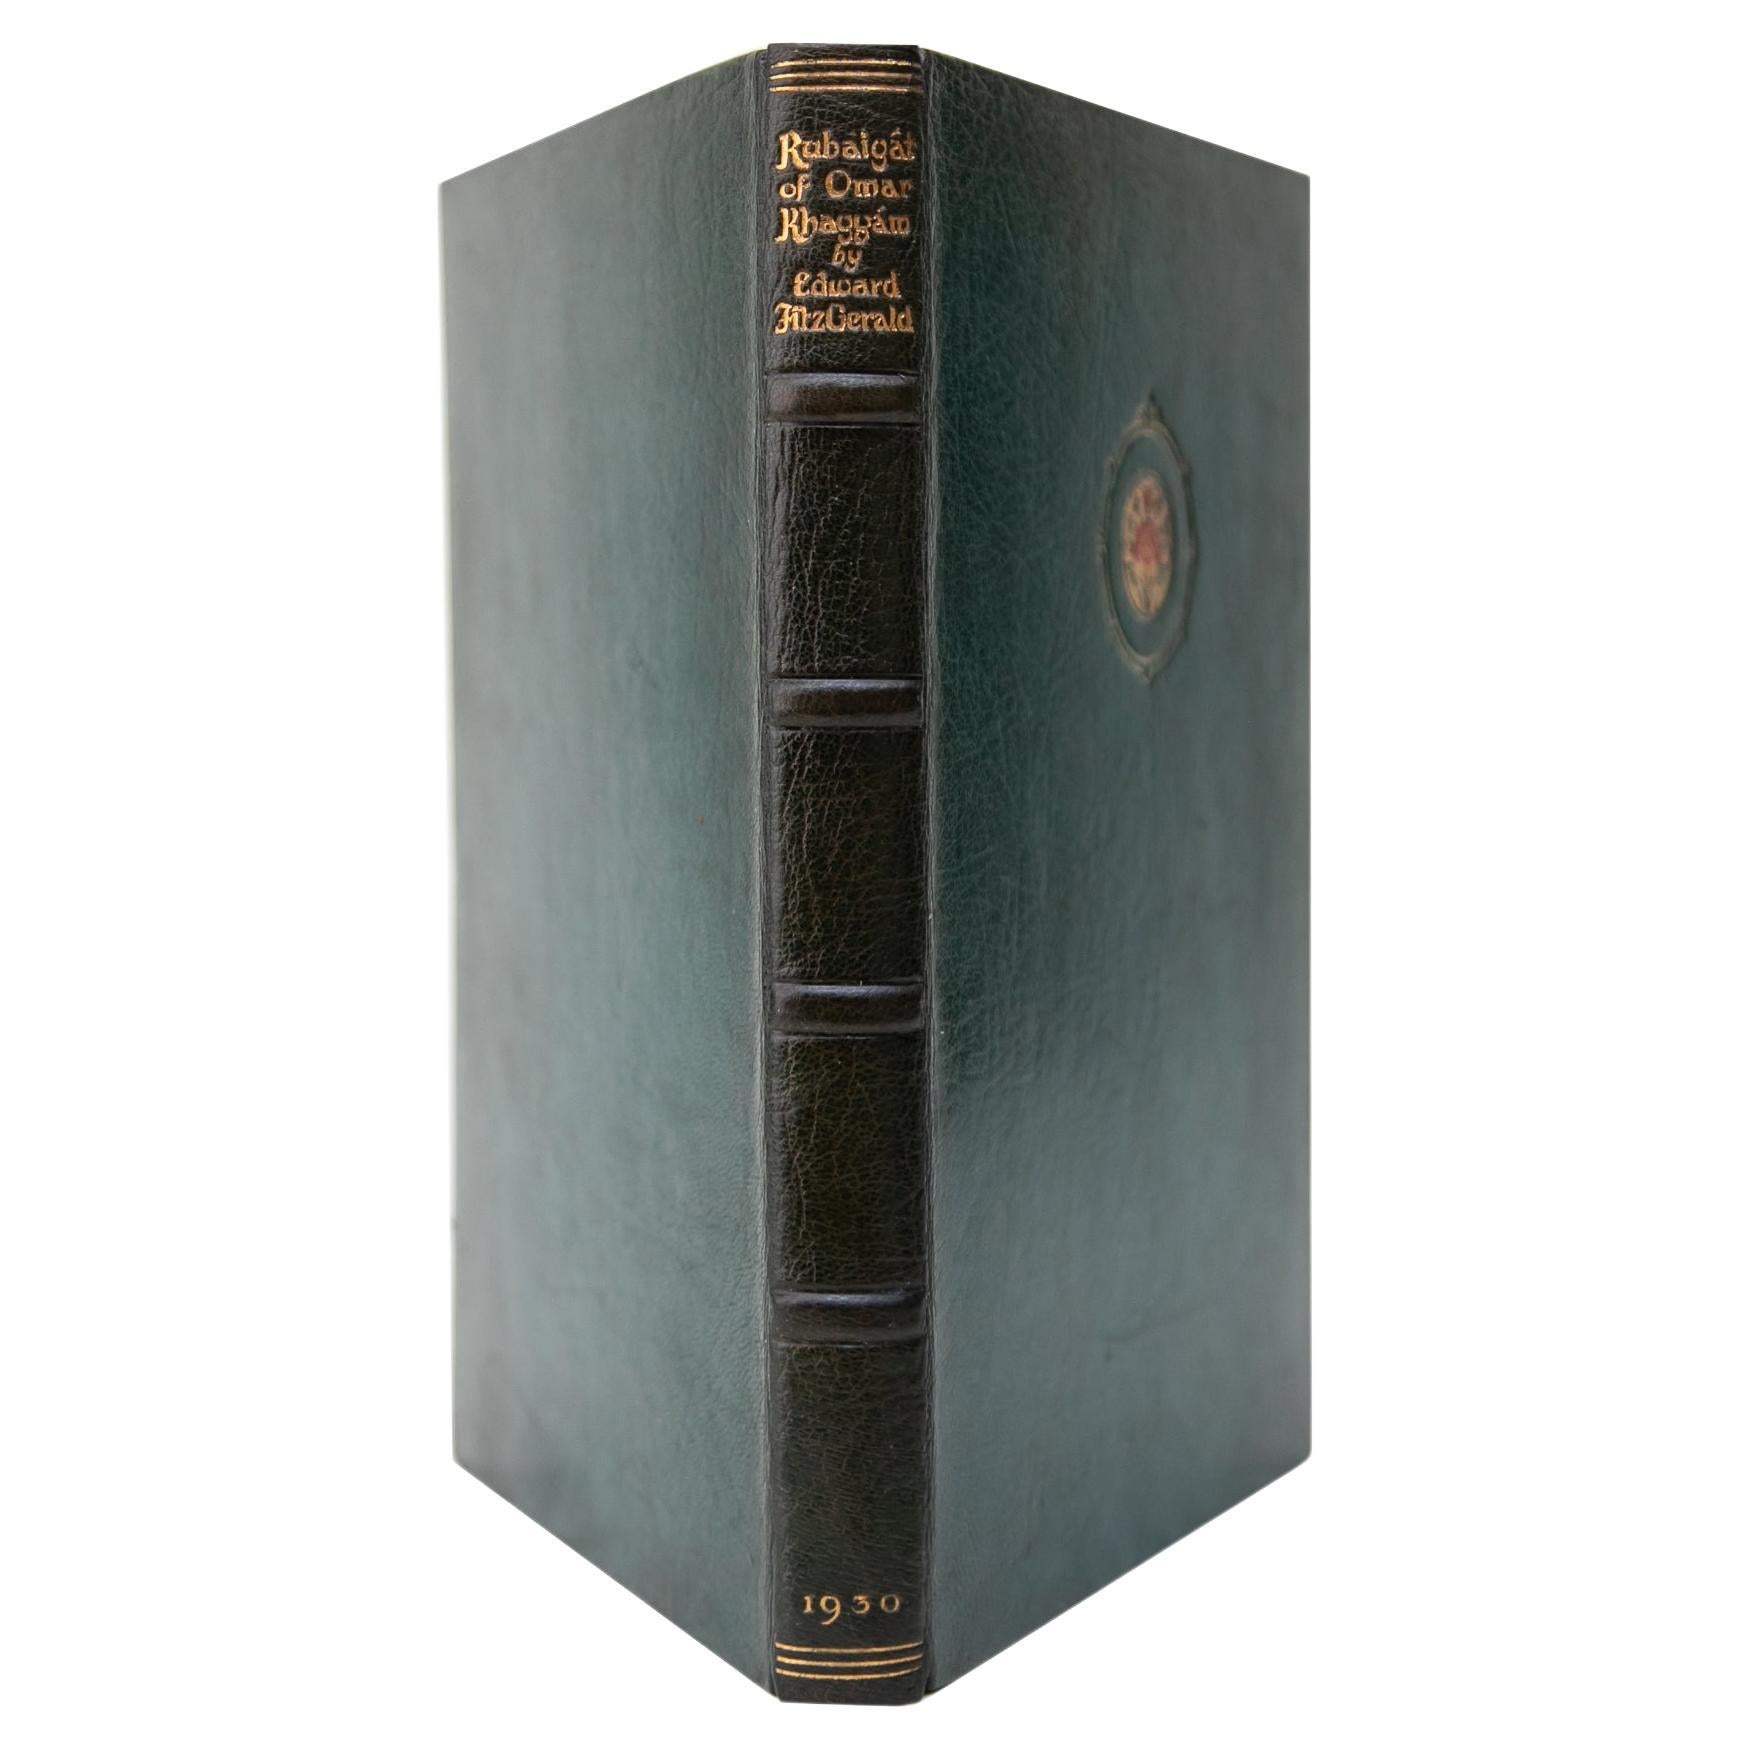 1 Volume. Edward Fitzgerald, Rubáiyát of Omar Khayyám. For Sale